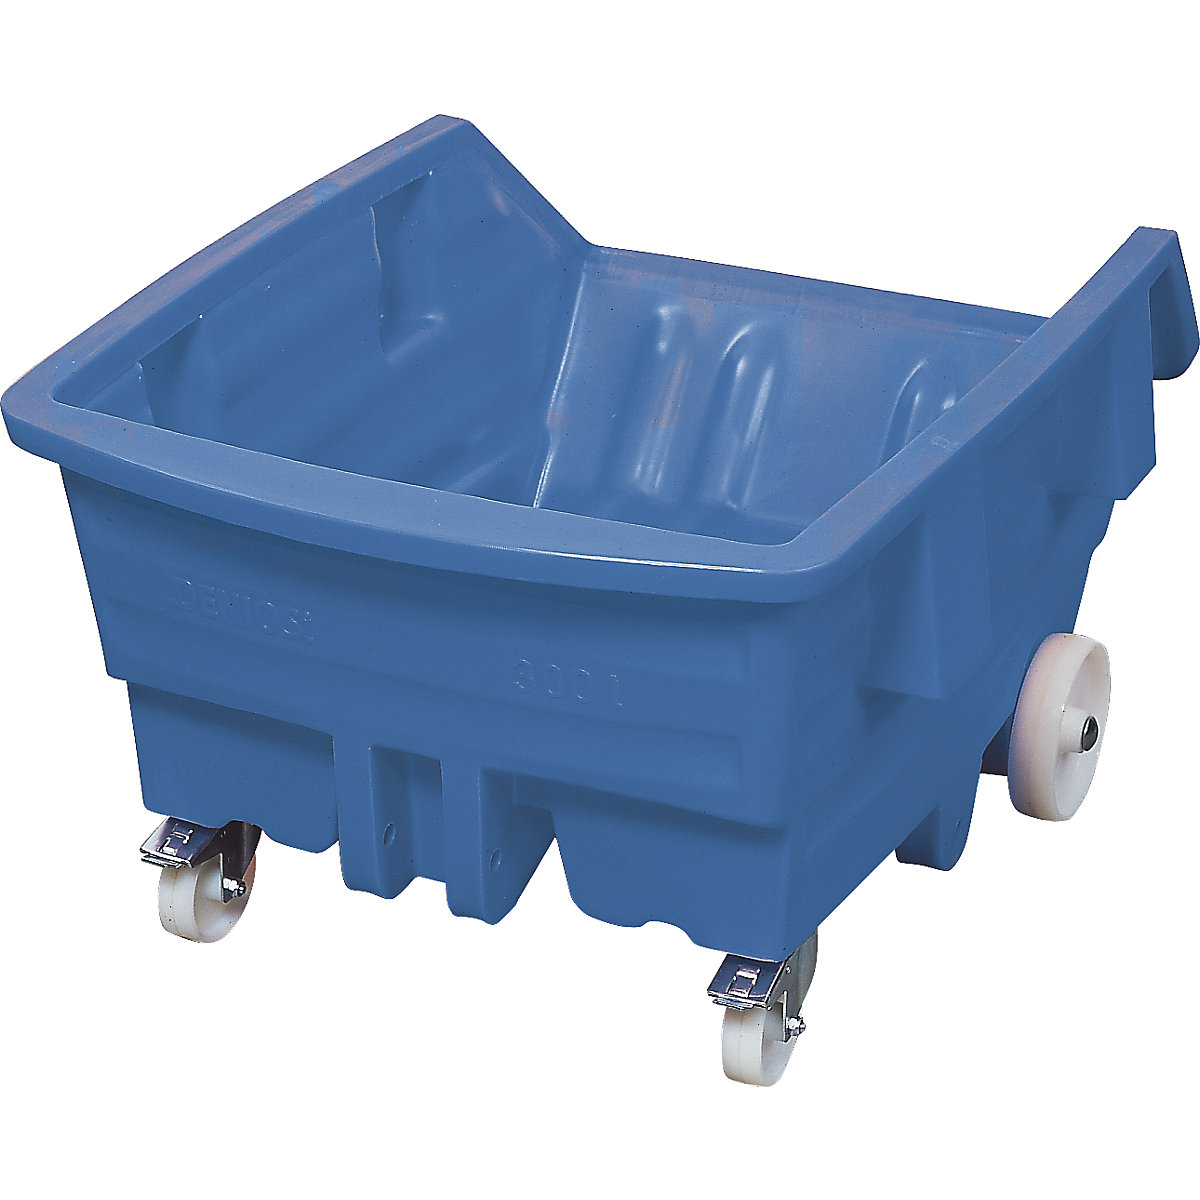 Prekucna posoda iz polietilena, s kolesi, prostornina 0,3 m³, modre barve-12